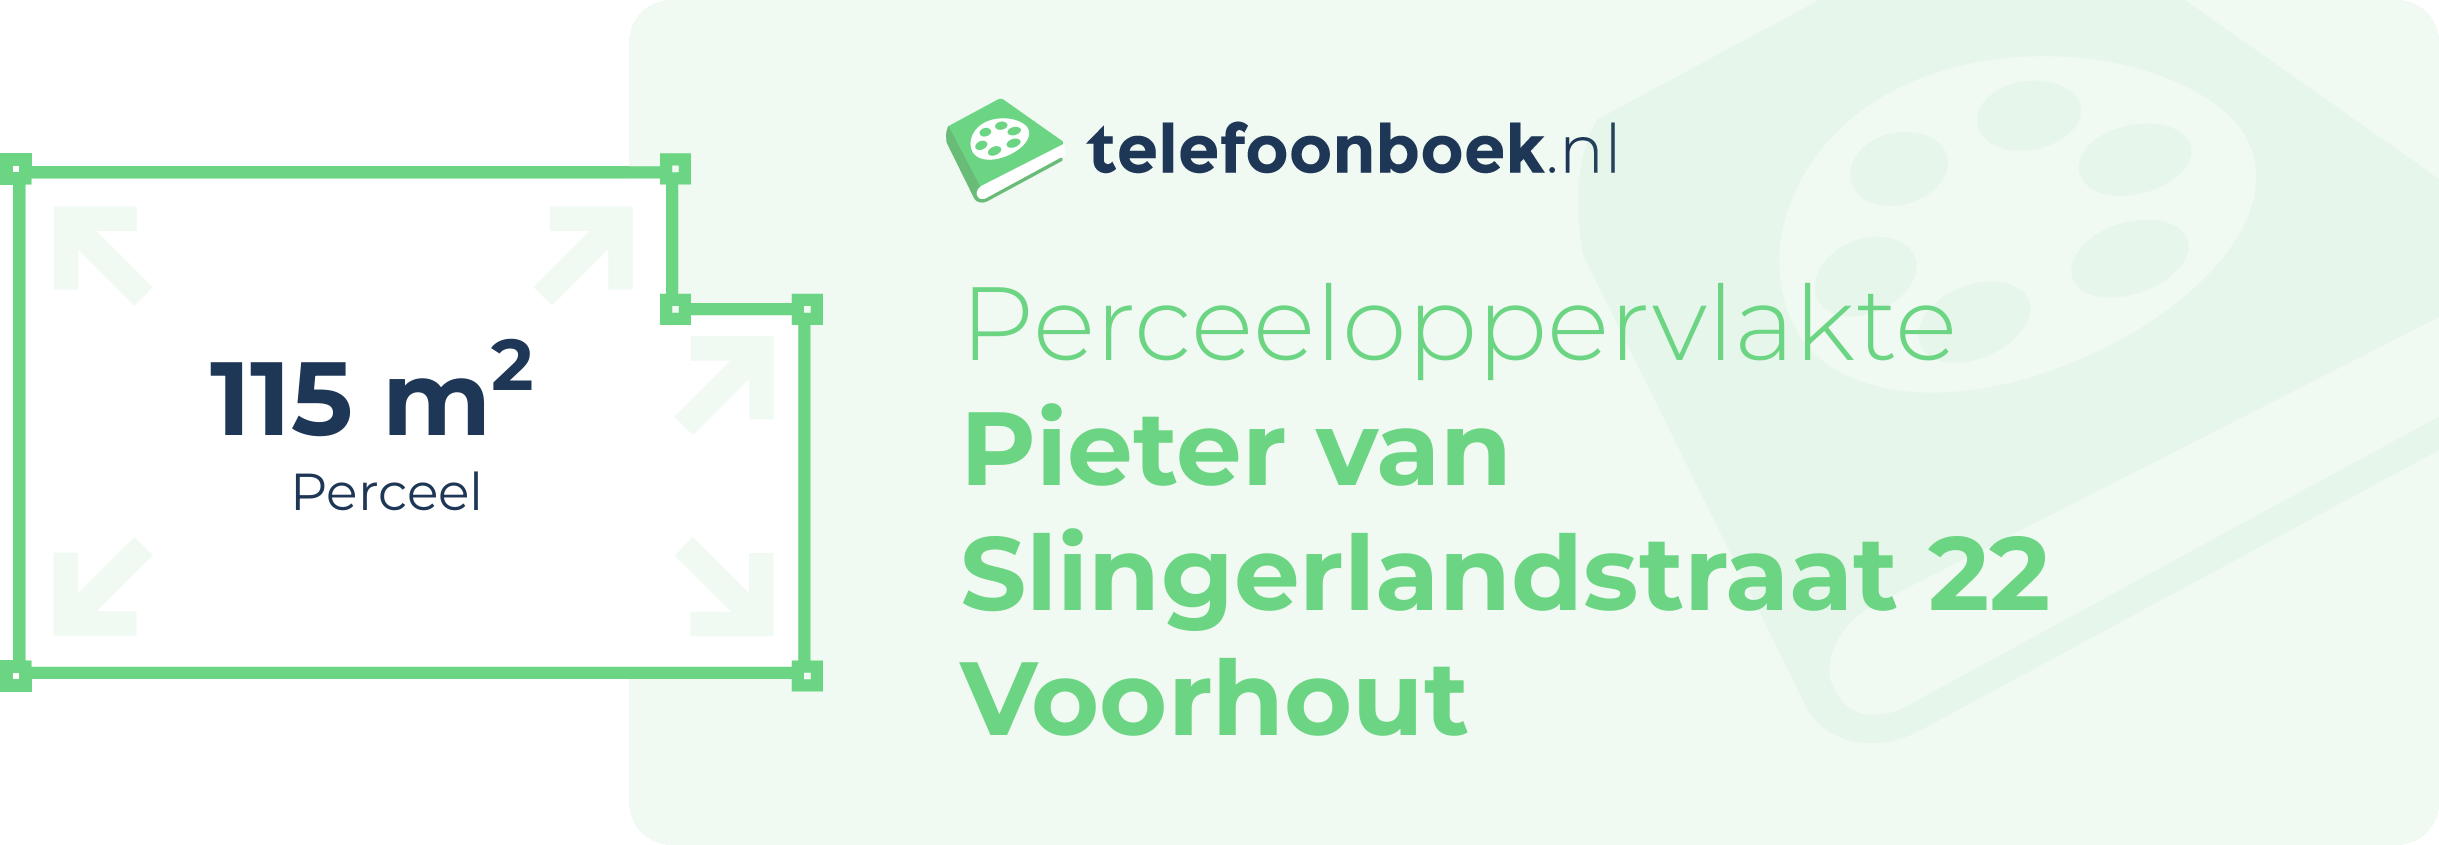 Perceeloppervlakte Pieter Van Slingerlandstraat 22 Voorhout